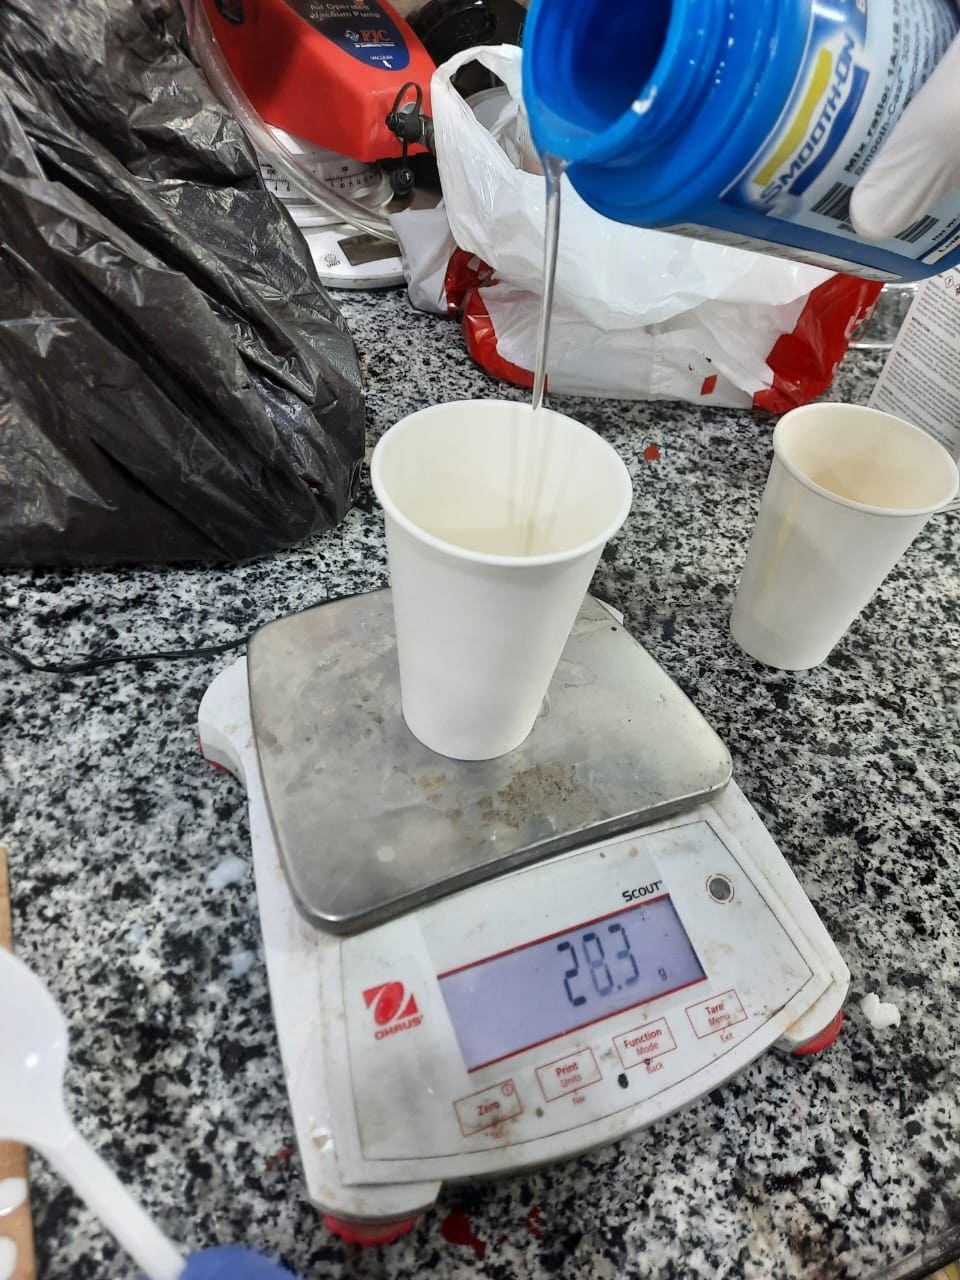 Measuring resin